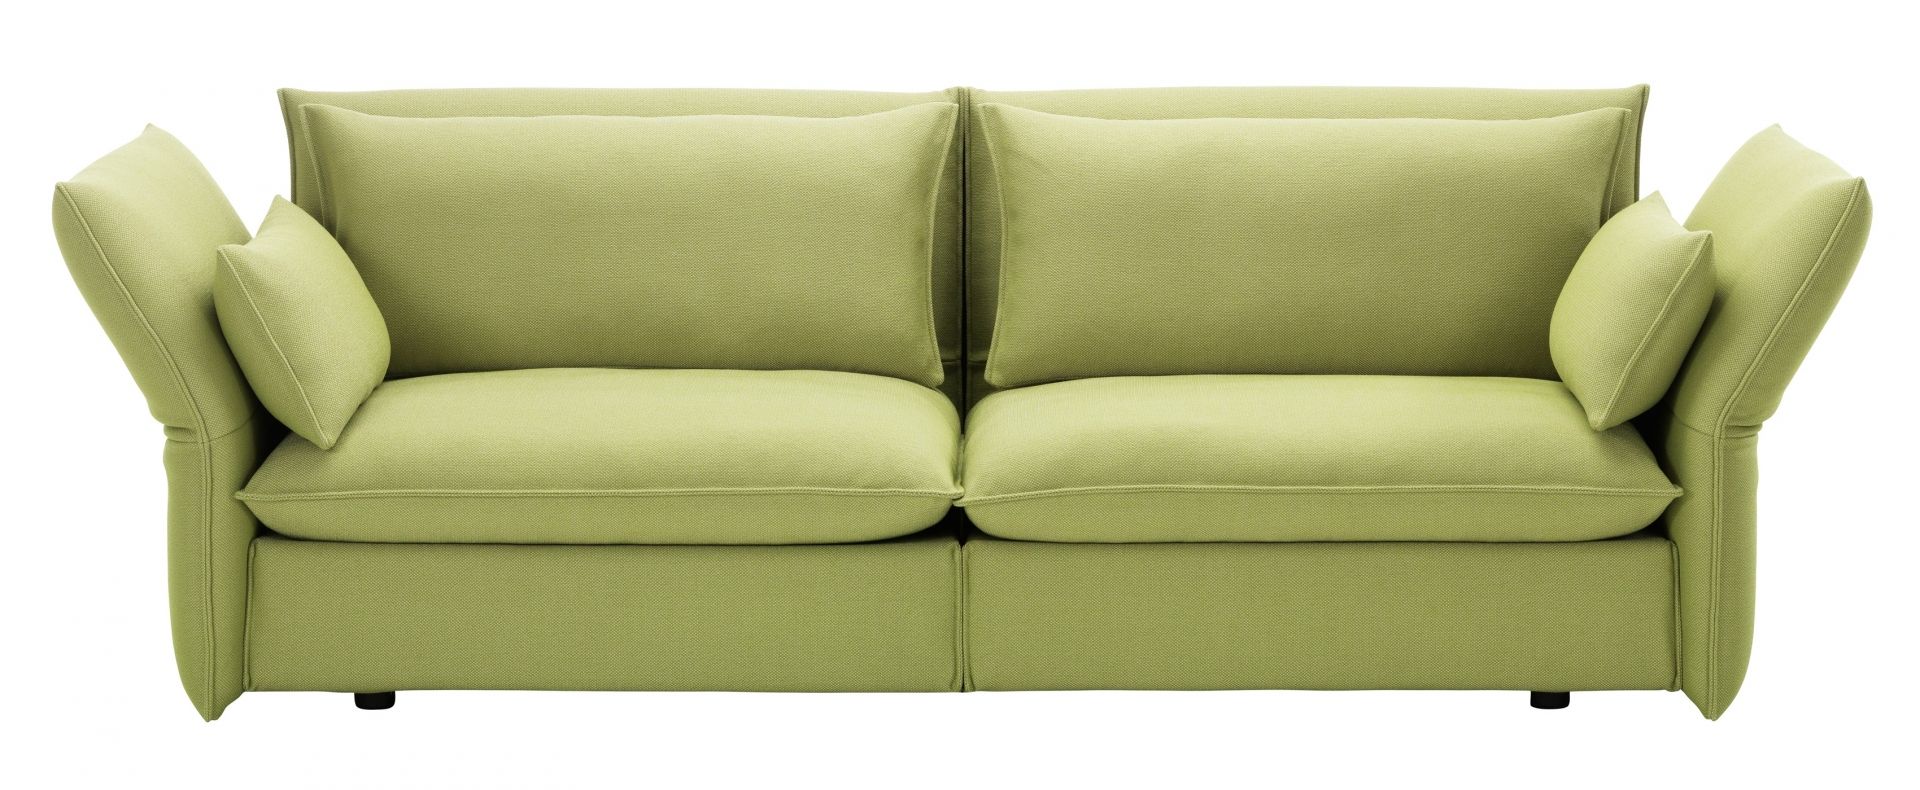 Vitra designové sedačky Mariposa (šířka 238 cm) - DESIGNPROPAGANDA